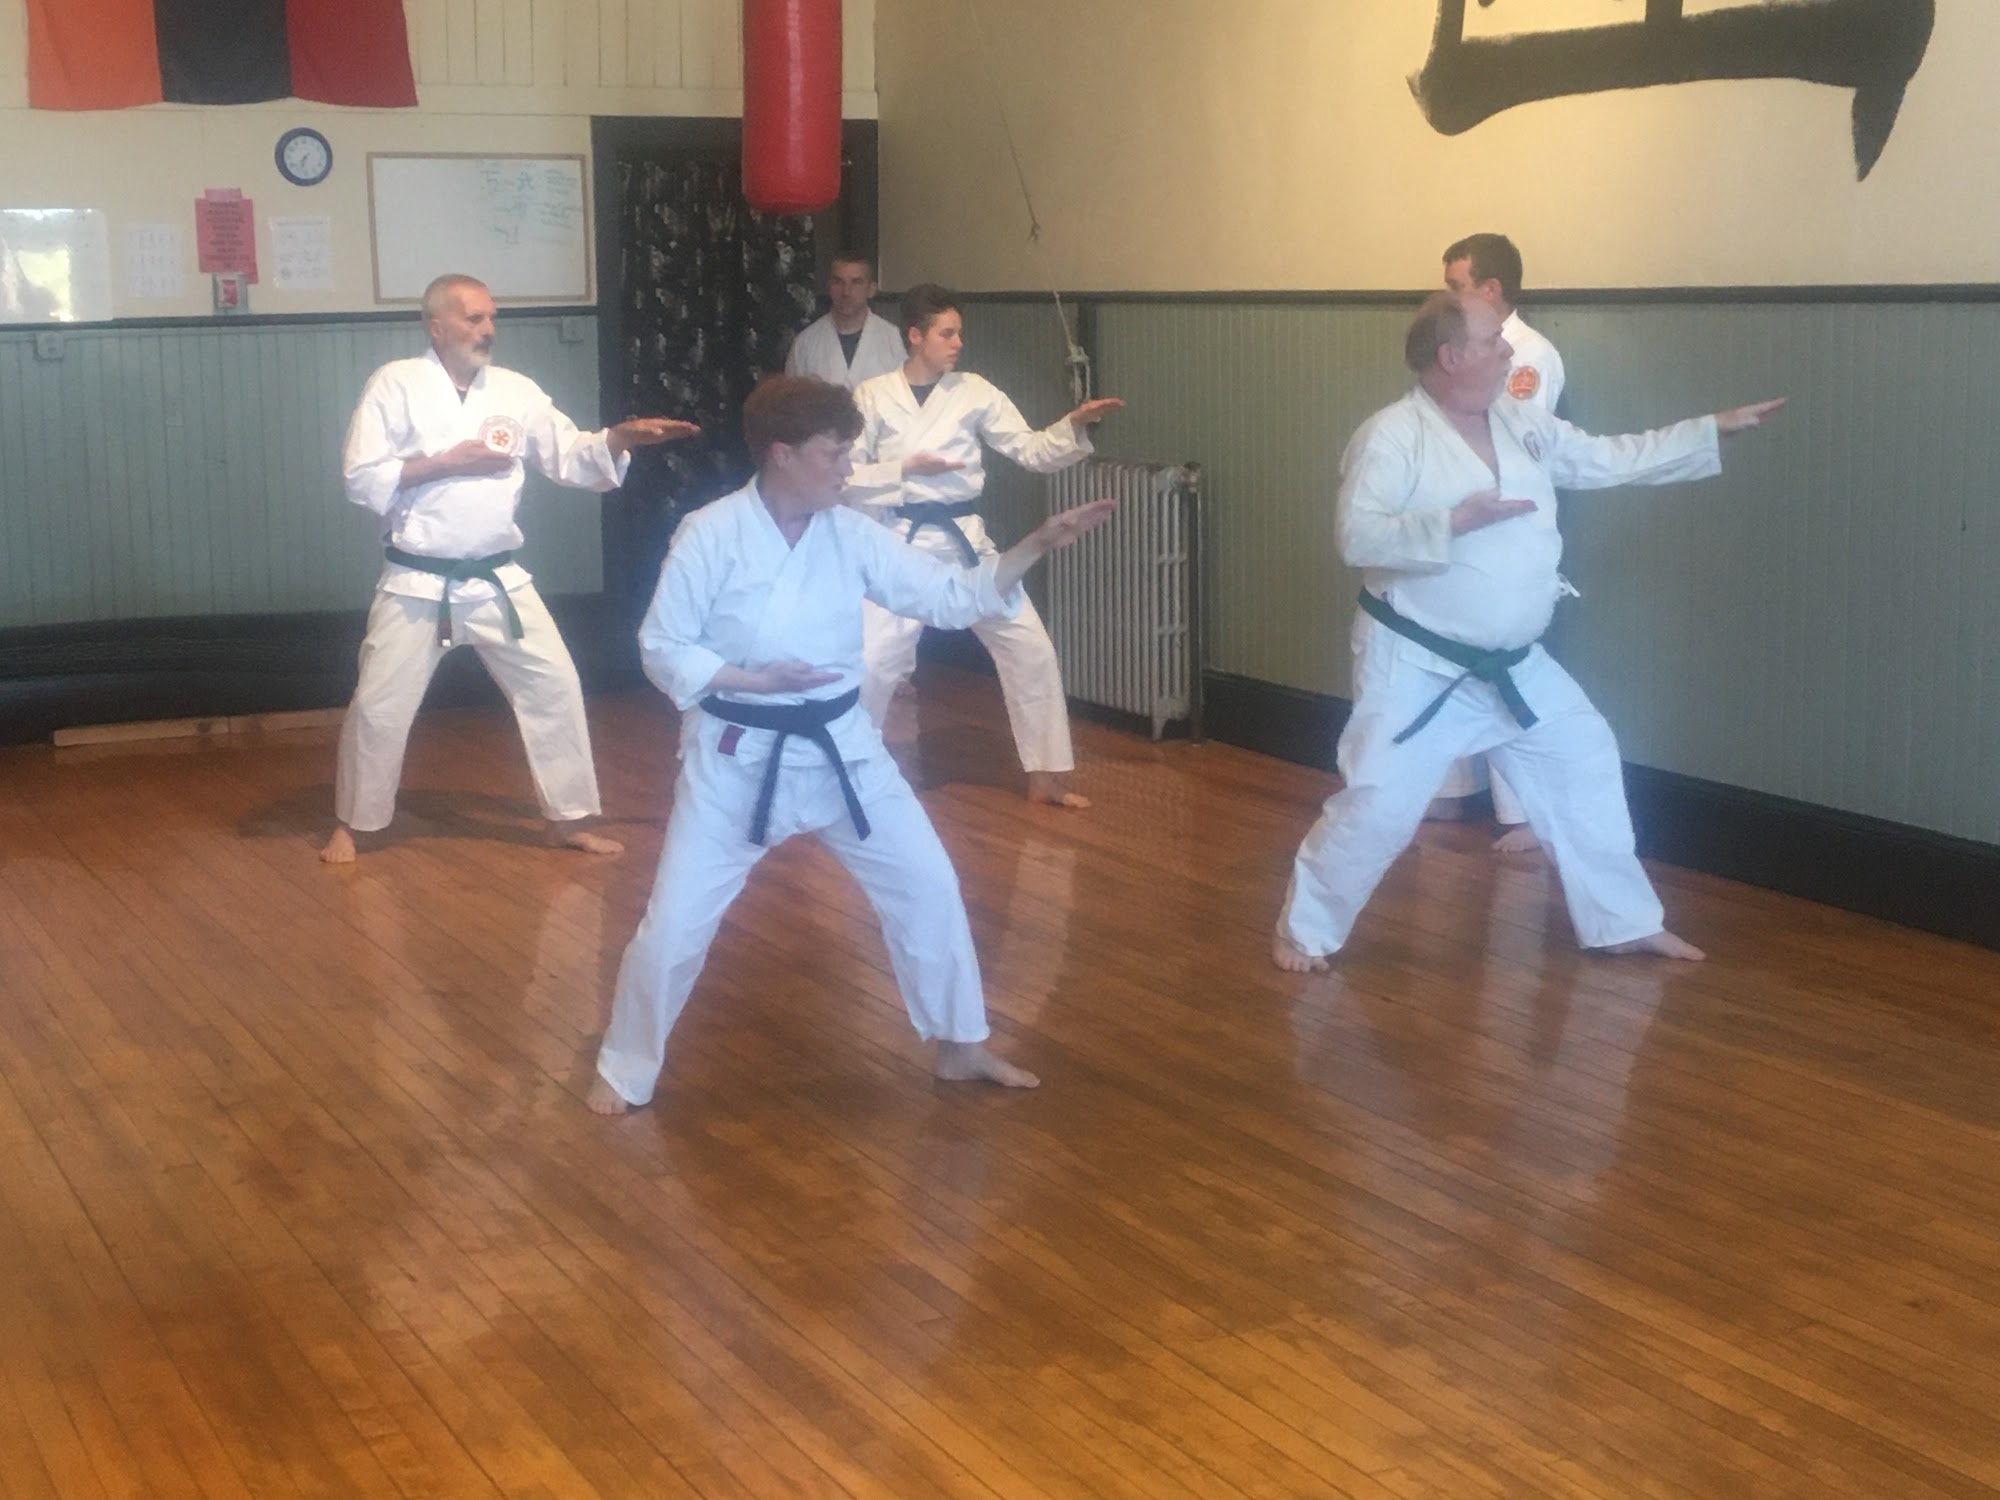 Wu Hsing Shan School-Martial Arts 101 Leeman Hwy, Bath Maine 04530